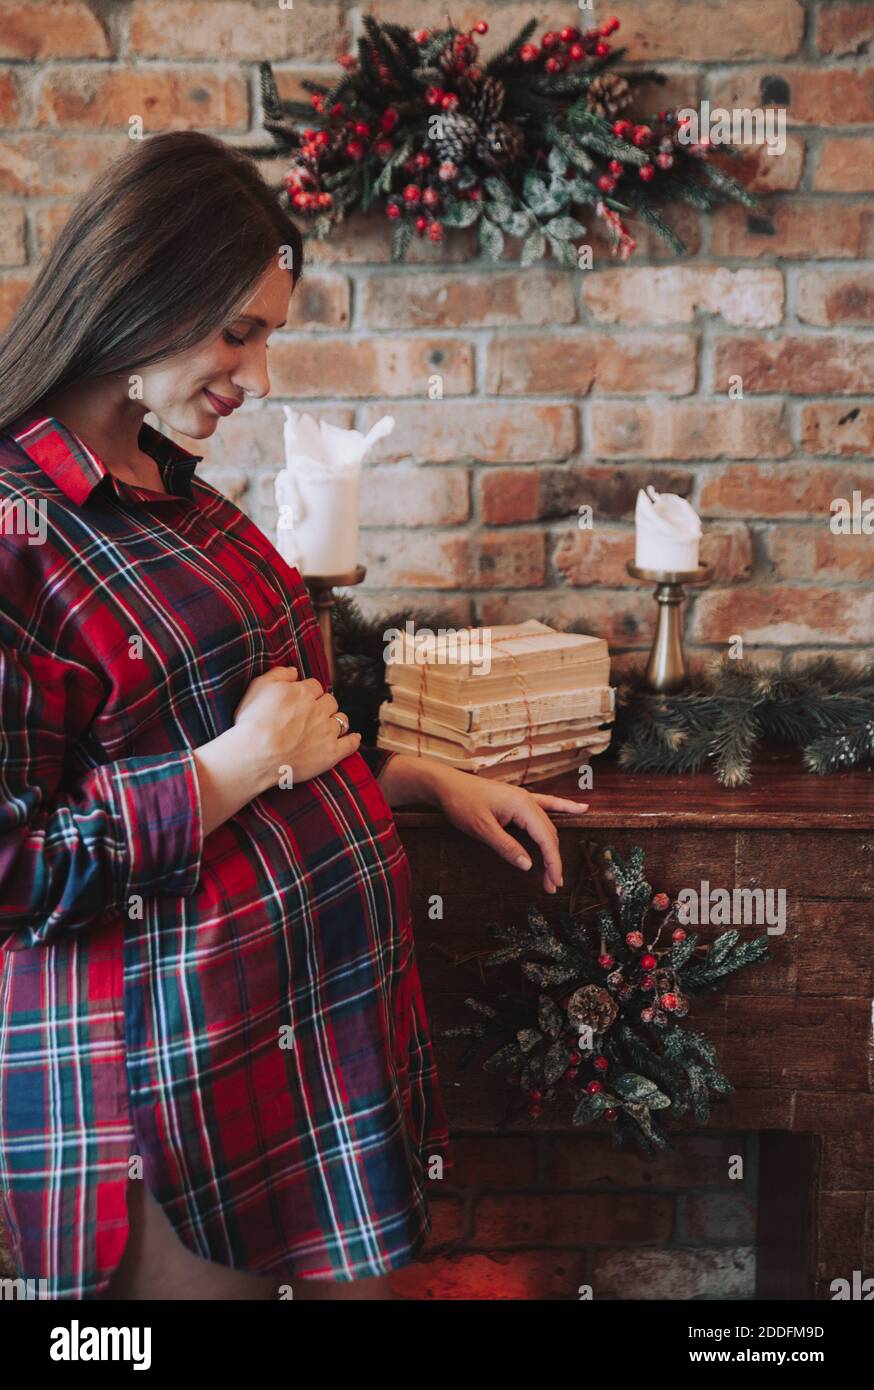 Schwangere Frau hält ihren Bauch neben einem gemütlichen Backstein Kamin in einem karierten roten Hemd. Gemütliche, rustikale Weihnachtsstimmung. Weihnachten, Winterschwangerschaft. Stockfoto